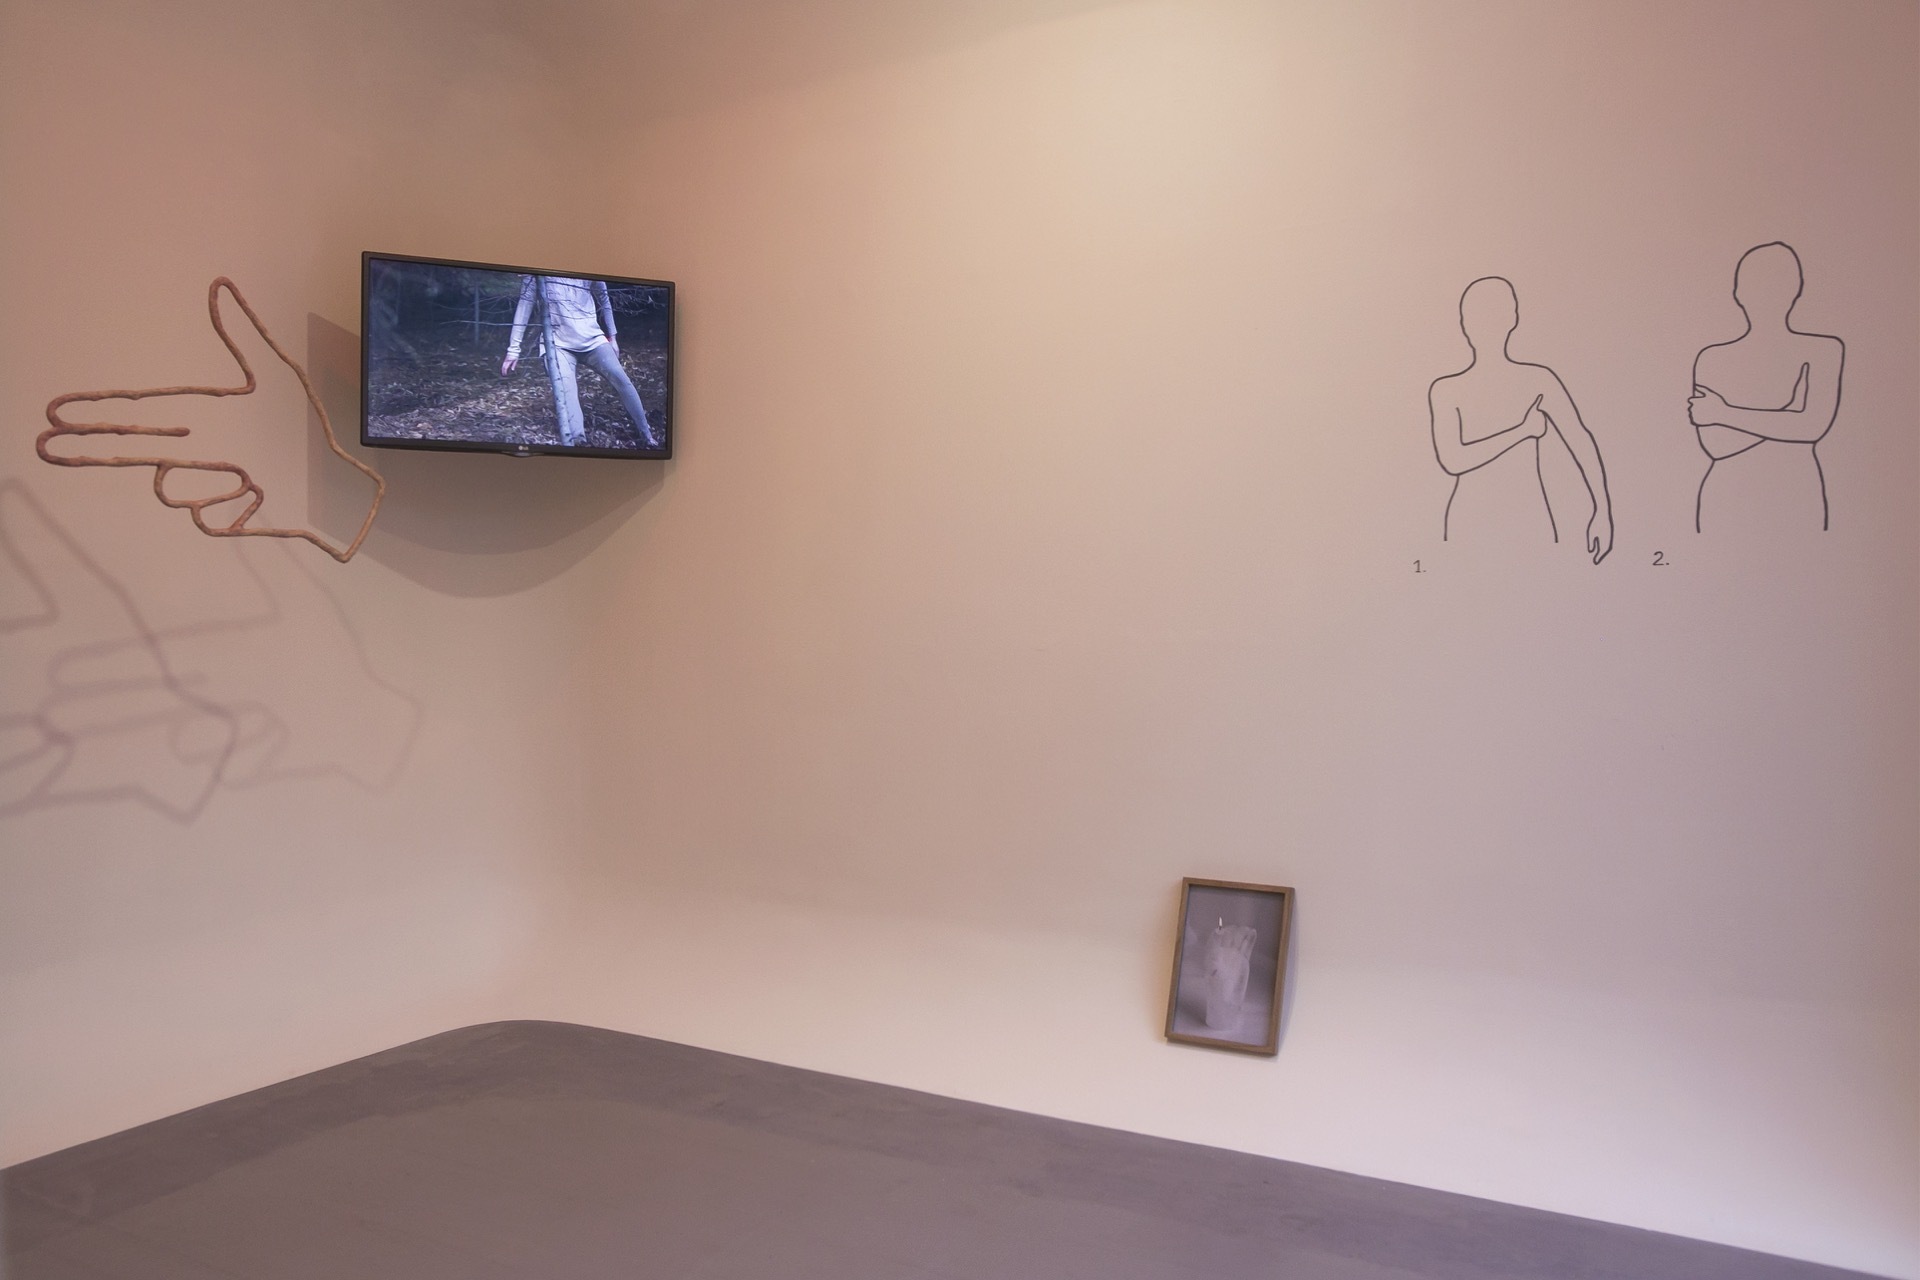 Agata Jarosławiec, Tonic Immobility, 2022, exhibition view